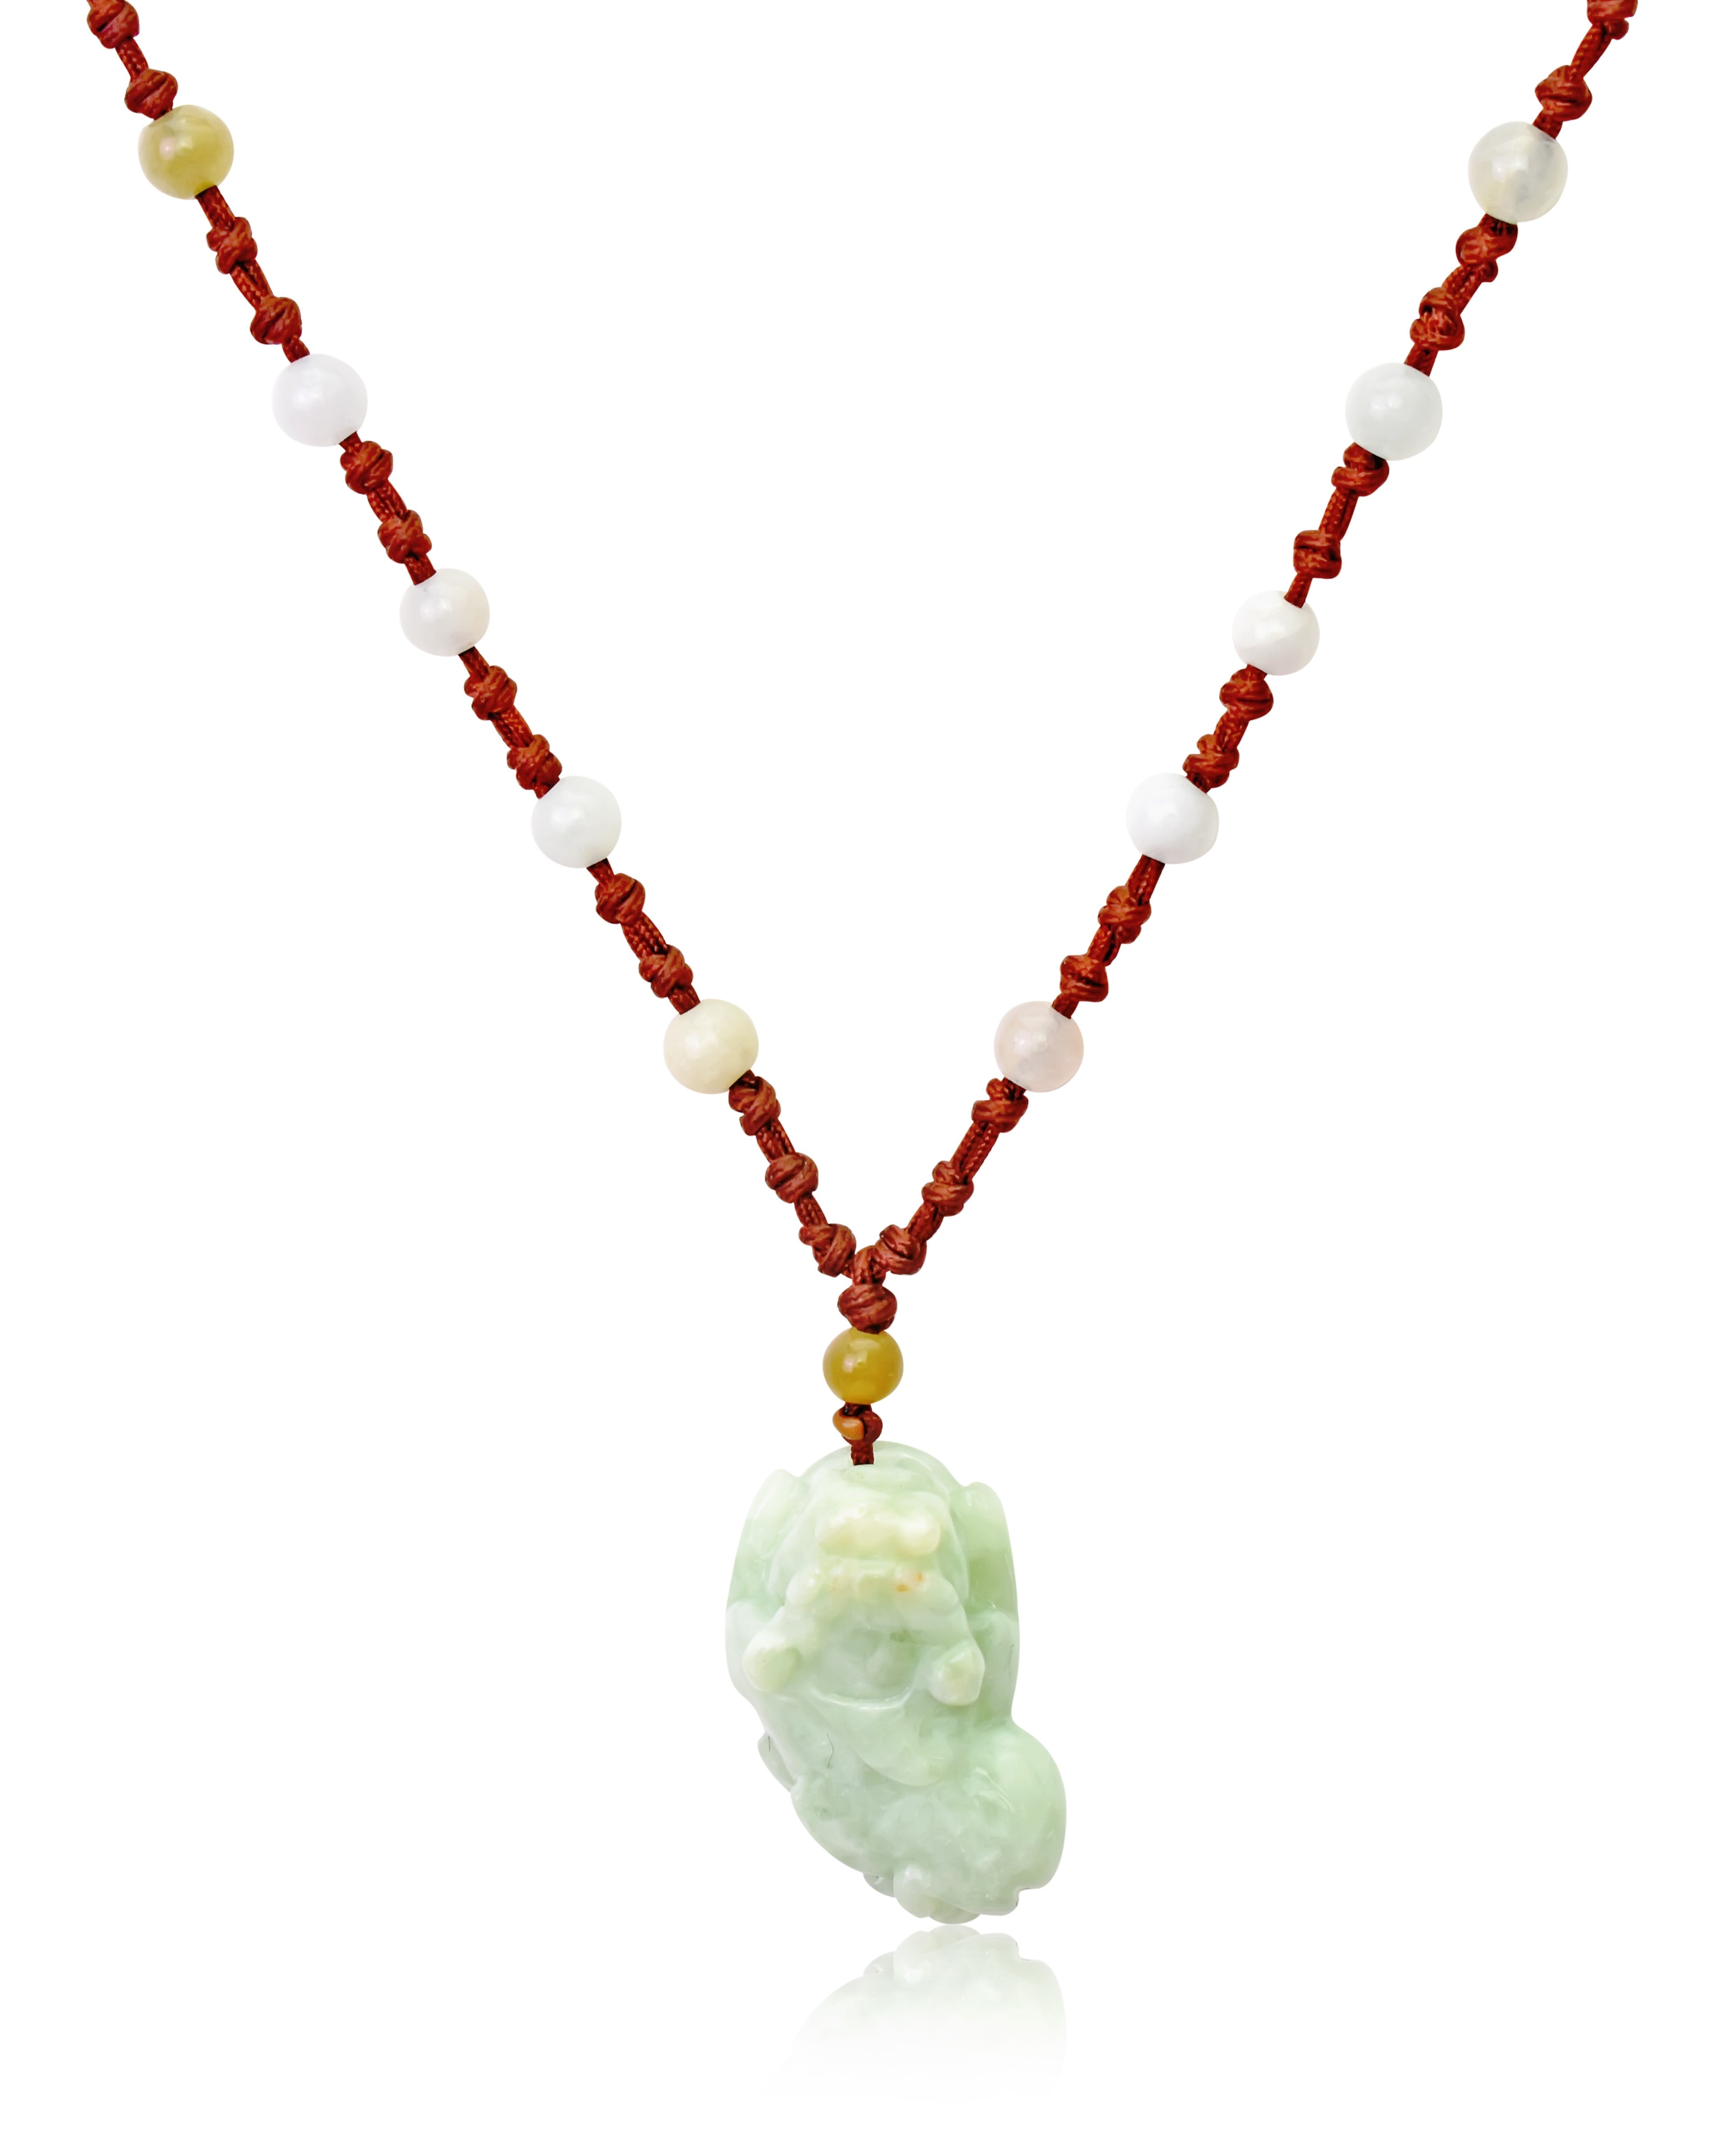 PI Yau Handmade Jade Necklace Pendant